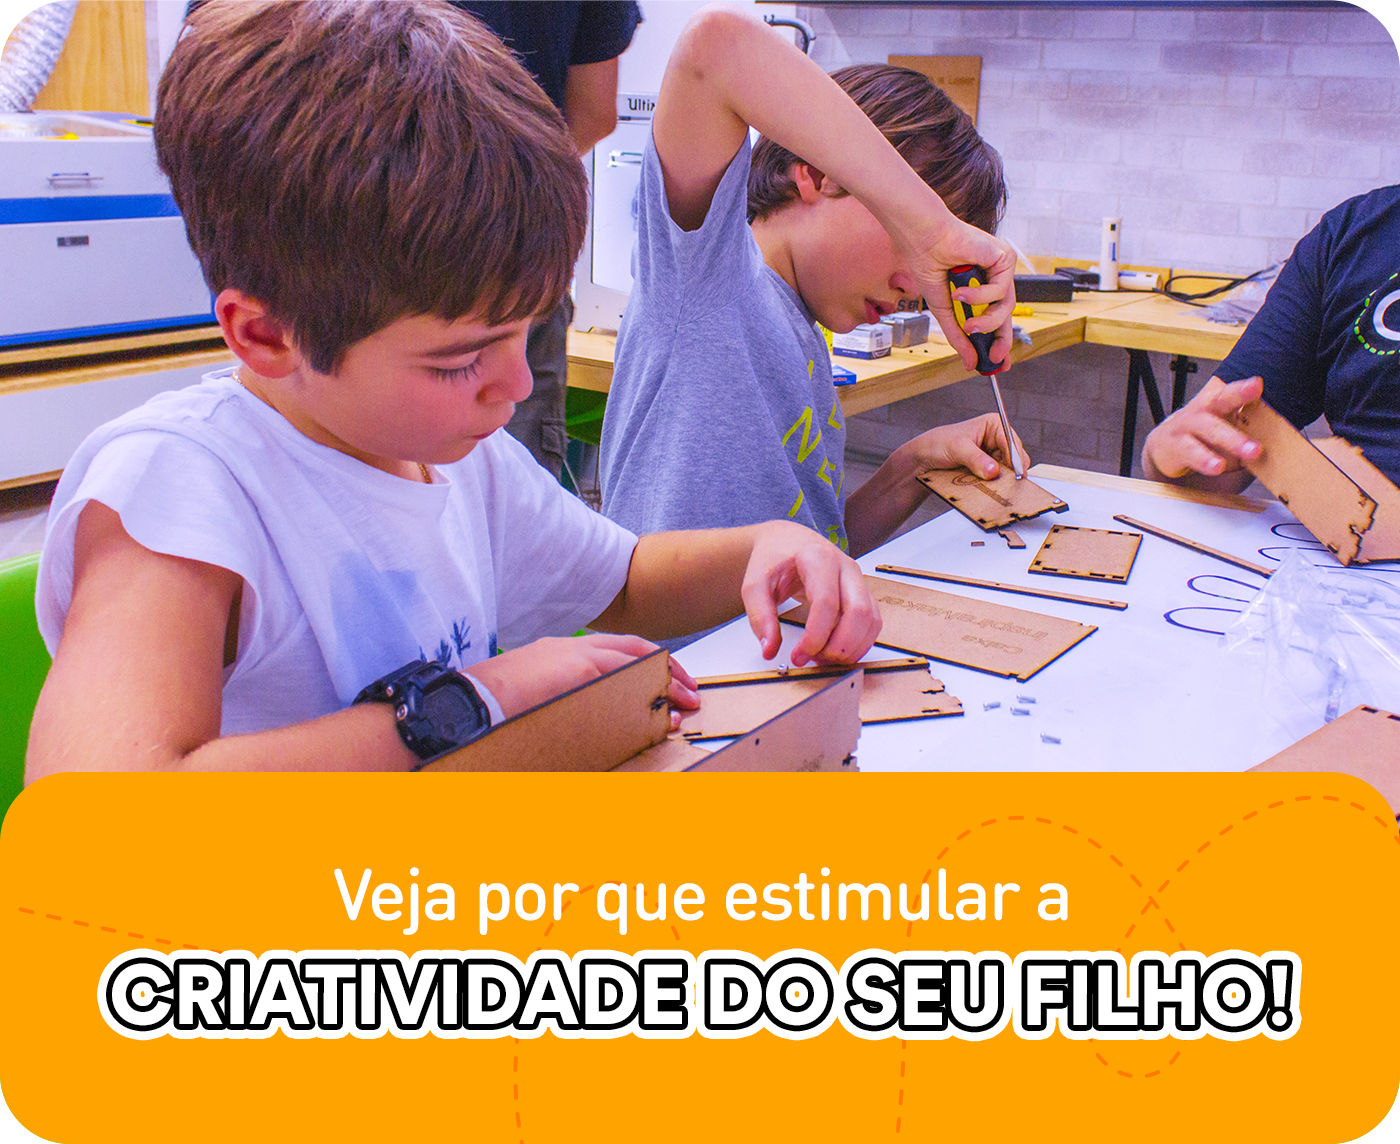 A imagem apresenta duas crianças concentradas na construção de um projeto manual, manuseando ferramentas. Na parte inferior da imagem, existe um retângulo laranja com o título "Veja por que estimular a criatividade do seu filho".